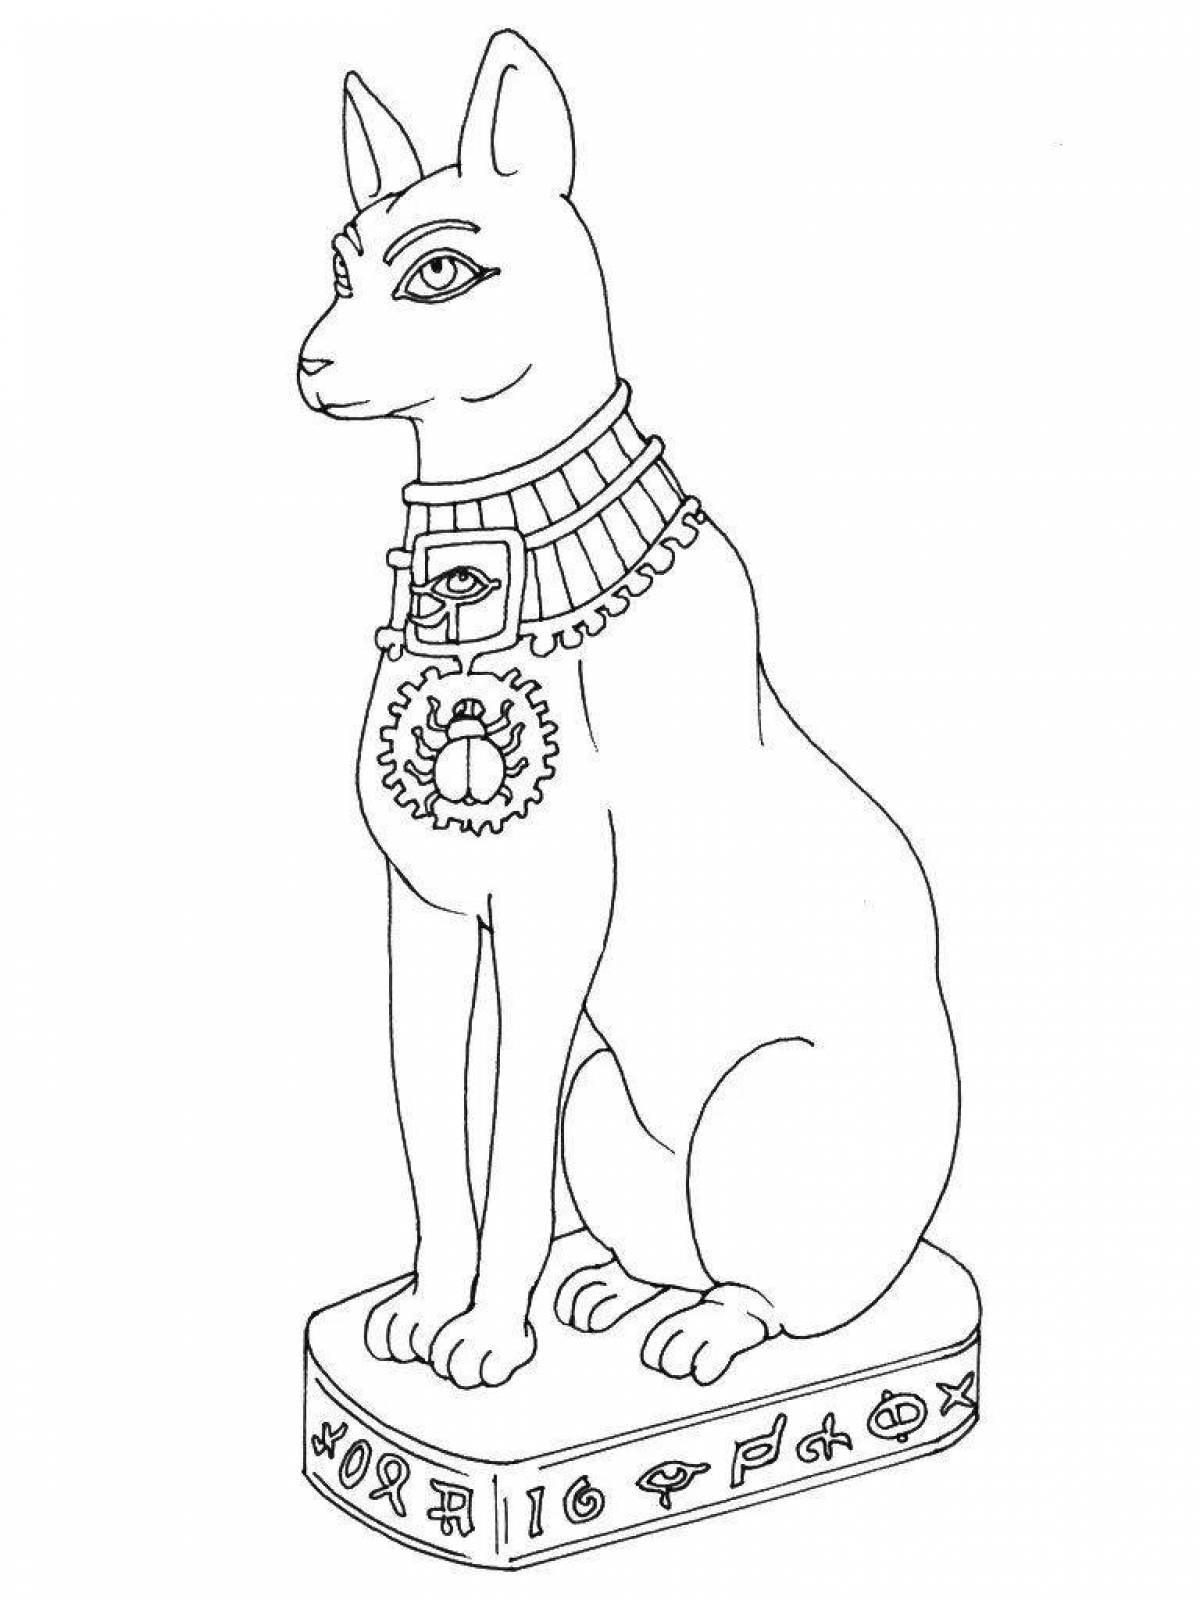 Раскраска яркая египетская кошка